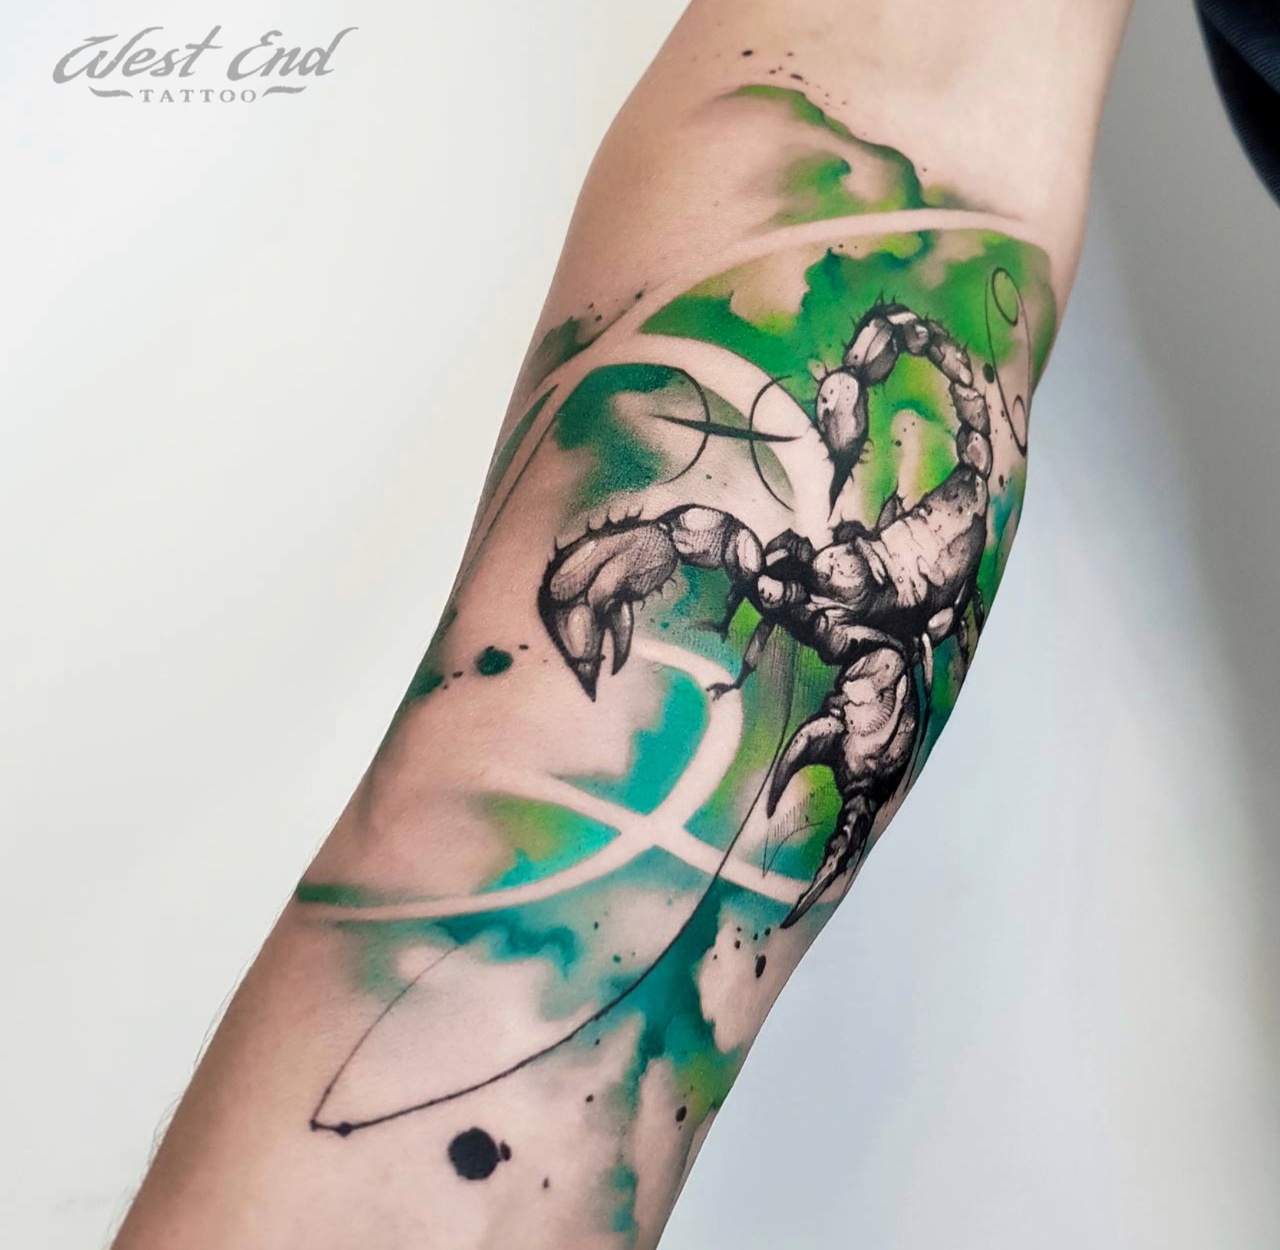 Татуировка скорпион — негативный или позитивный смысл имеет тату со скорпионом?